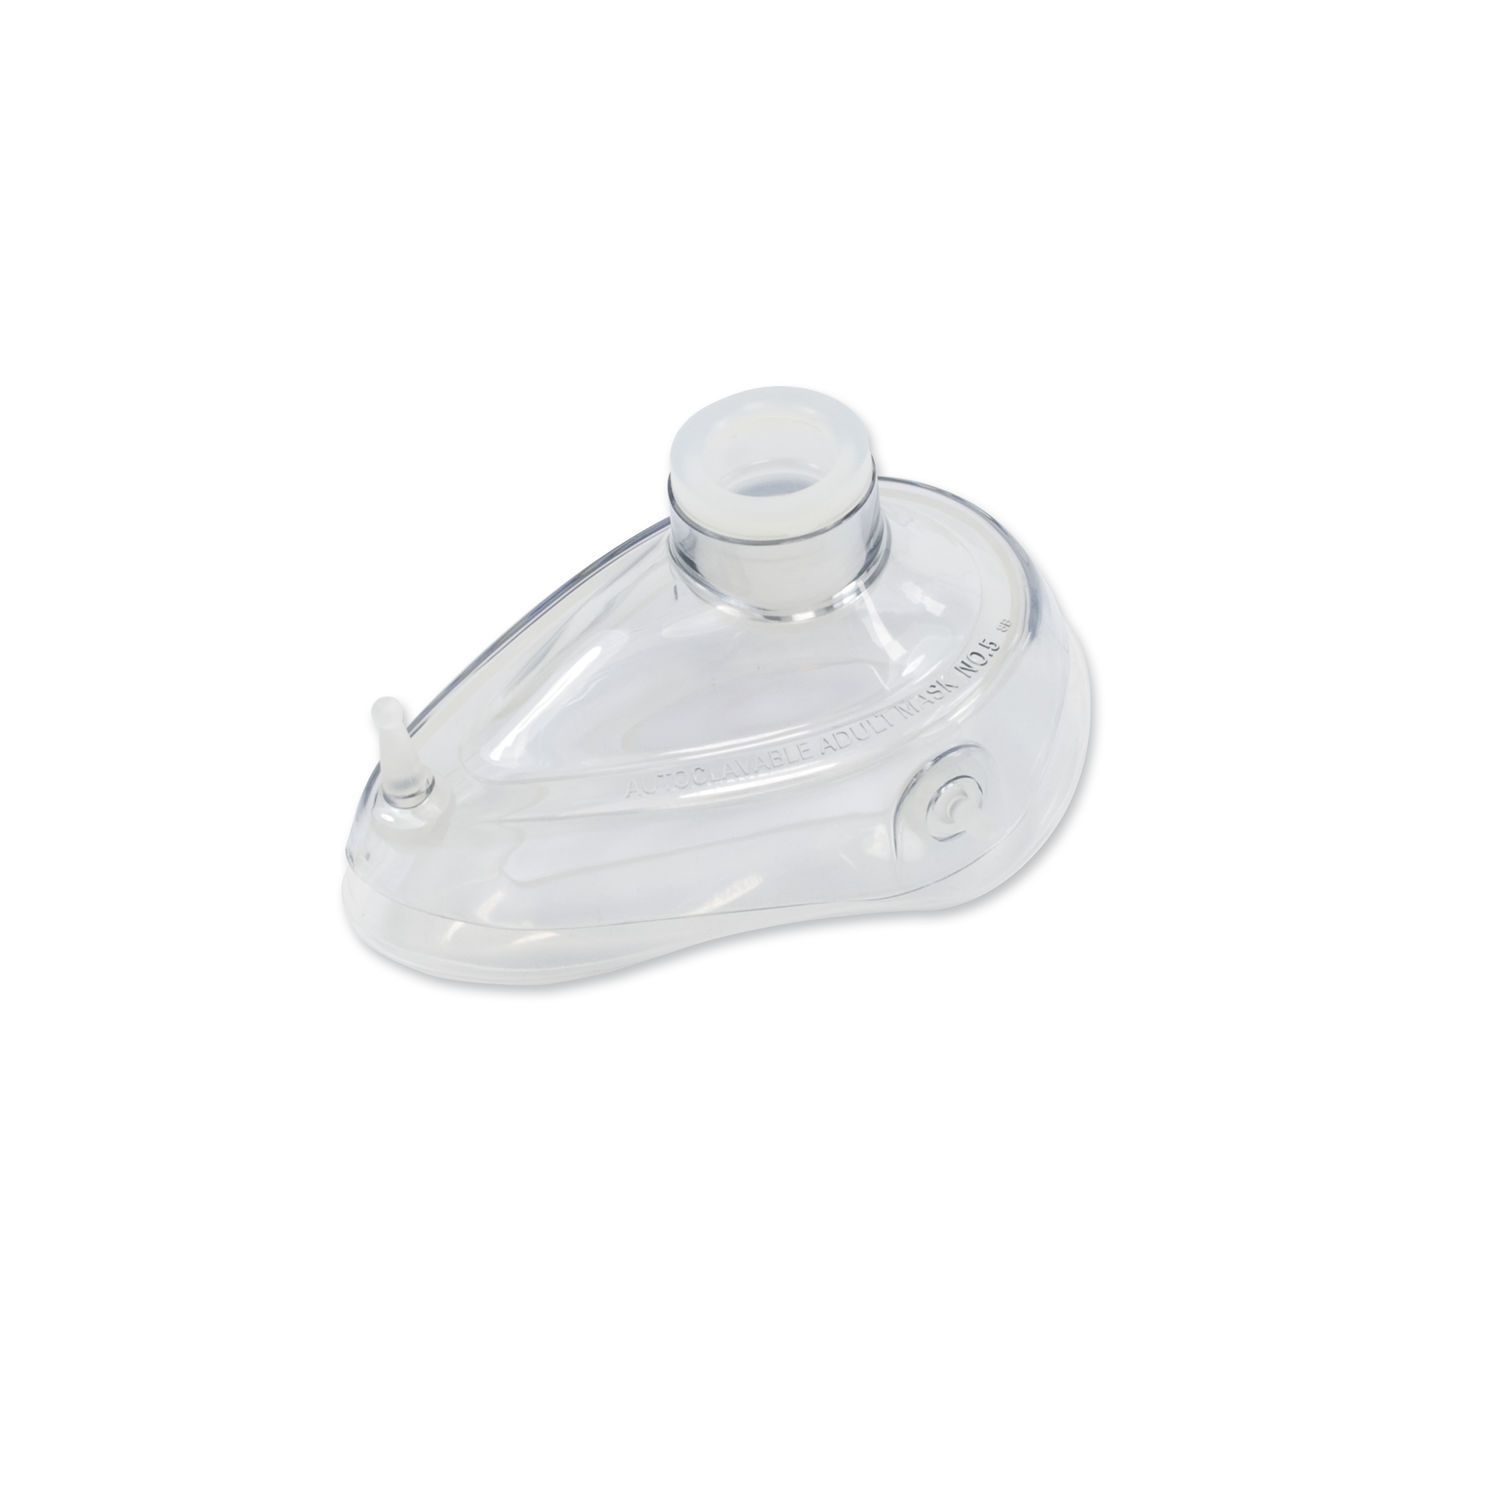 Ventilation mask / facial / silicone / reusable AERObag® Gr. 3,4,5 HUM